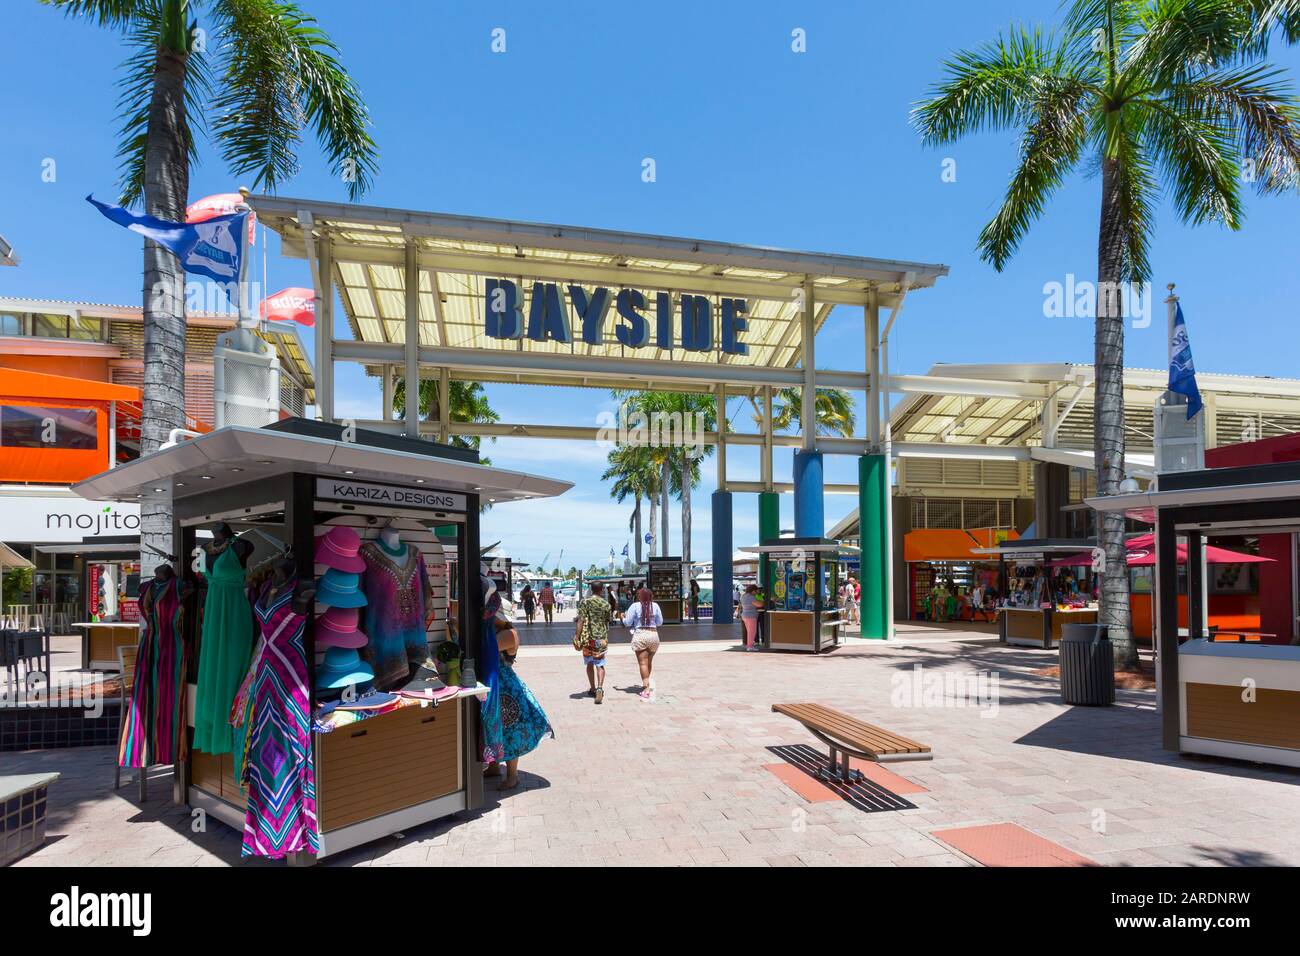 L'Entrée Du Marché Bayside, Centre-Ville De Miami, Miami, Floride, États-Unis D'Amérique, Amérique Du Nord Banque D'Images